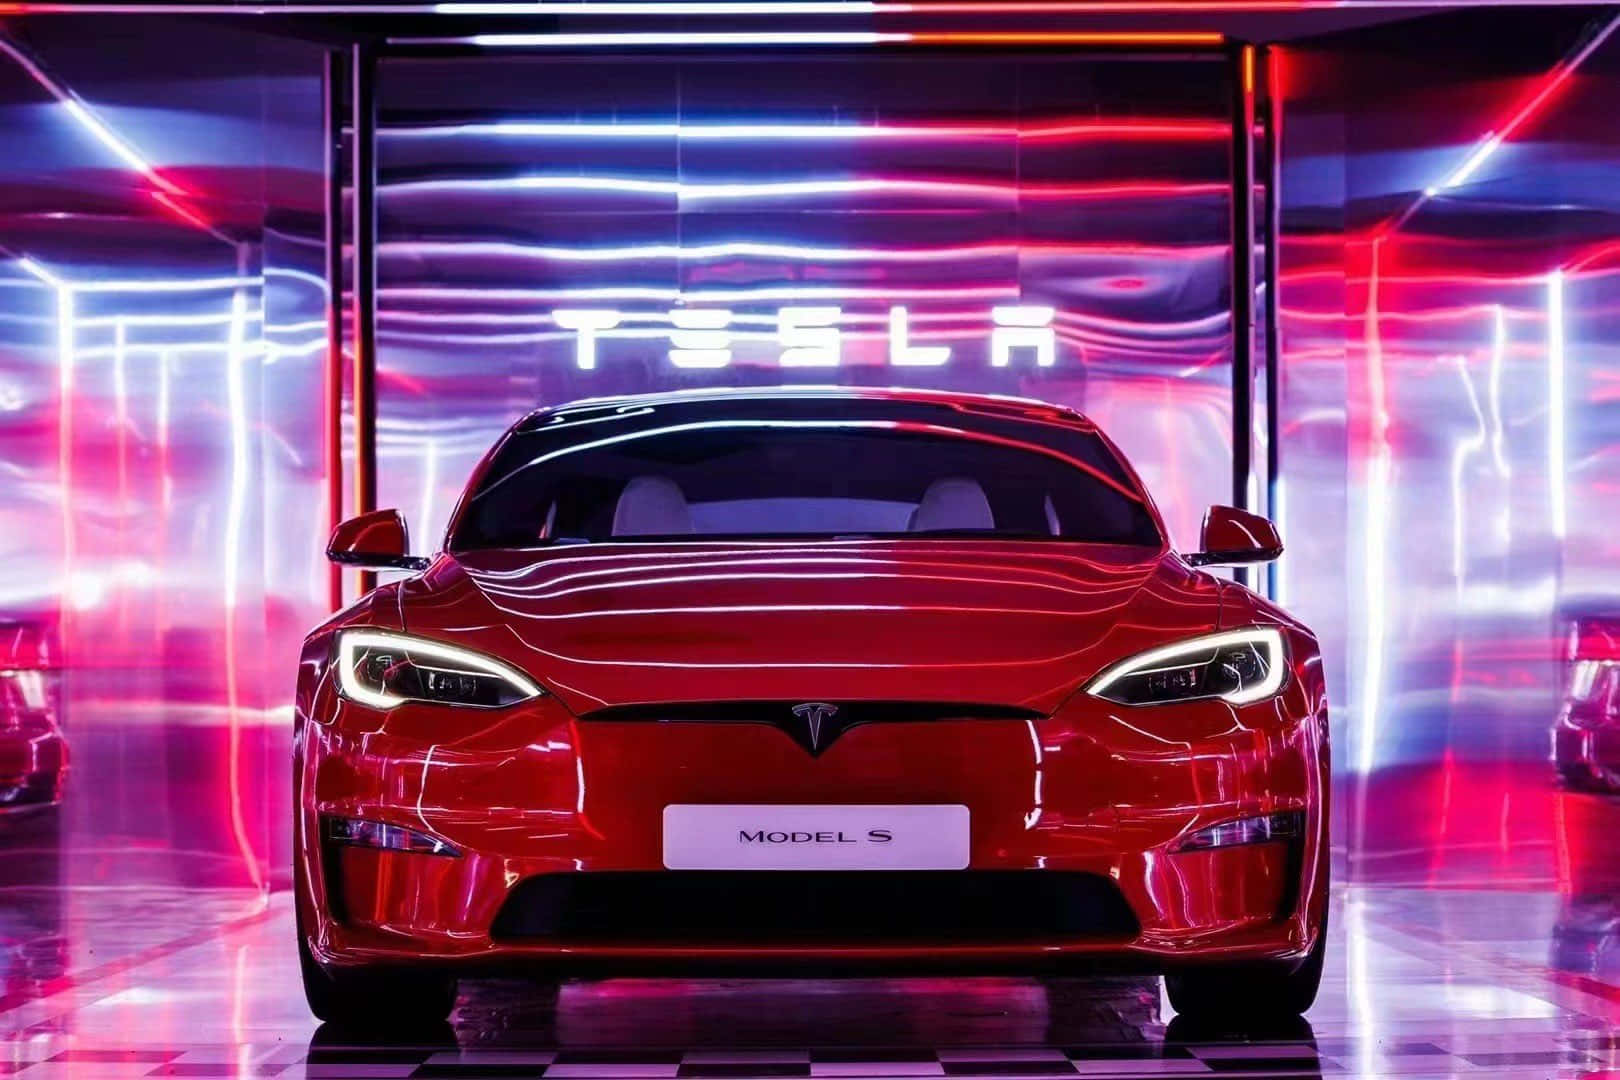 Teslasmodel 3: Ein Innovatives Revolutionäres Auto Für Die Moderne Ära.